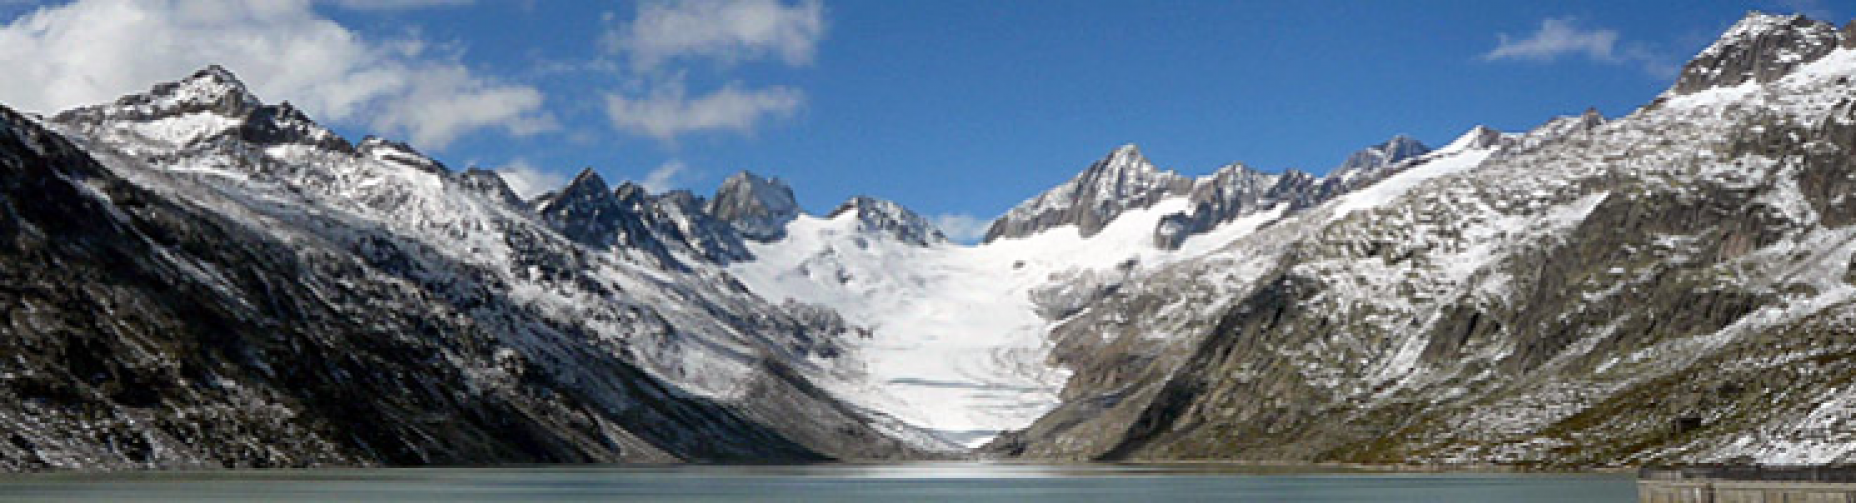 Oberaargletscher / Oberaar Glacier (photo: Jürgen Strub)